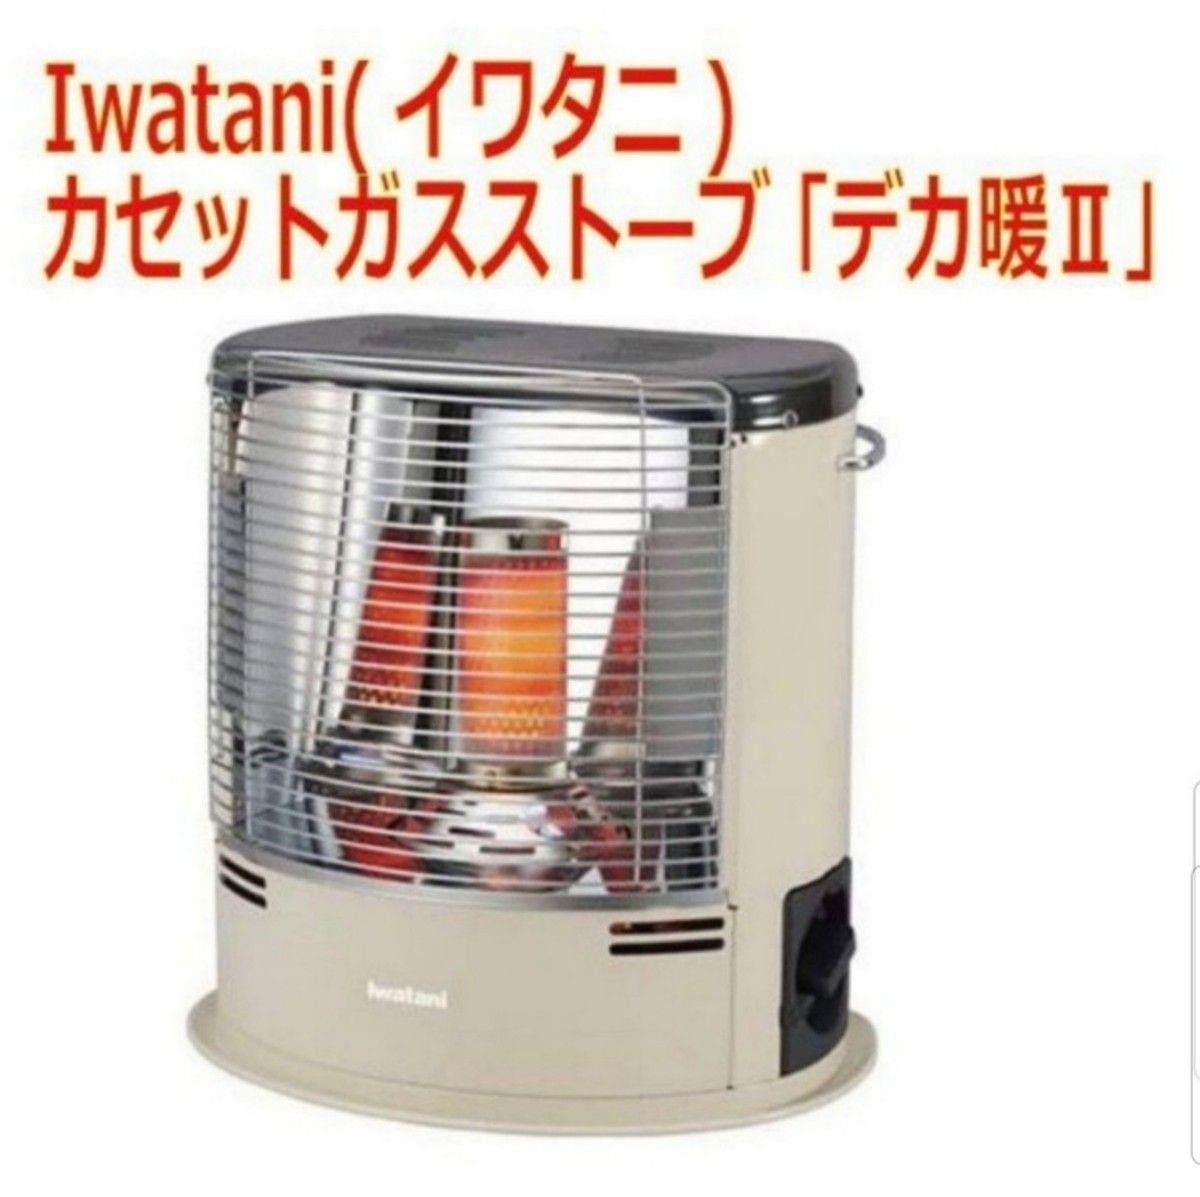 Iwatani(イワタニ)/カセットガスストーブ 「デカ暖Ⅱ」/CB-STV-DKD2